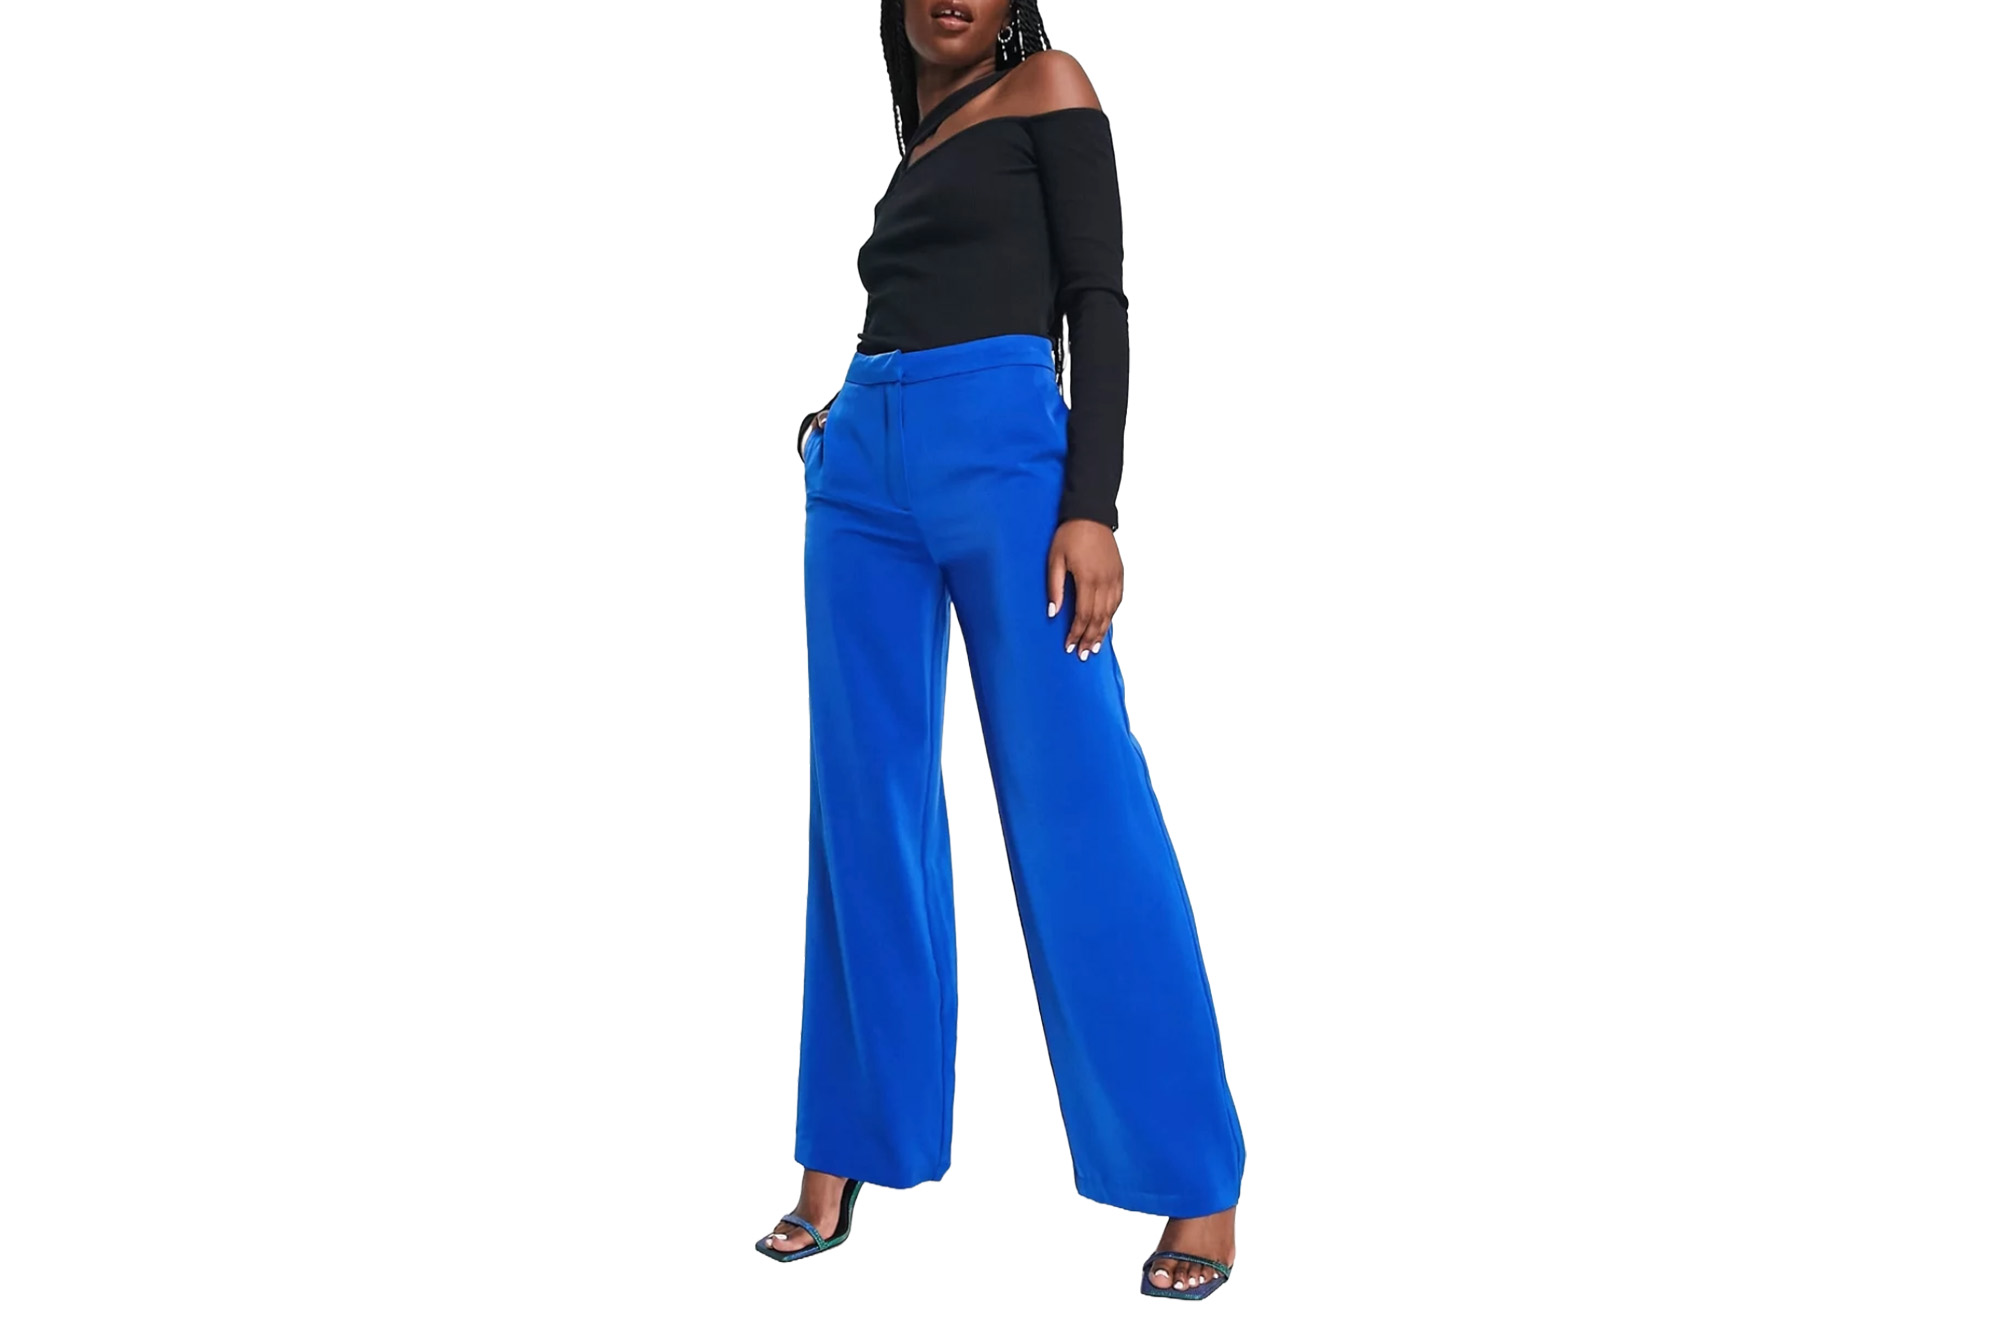 Ein Model in einer blauen Hose mit hoher Taille